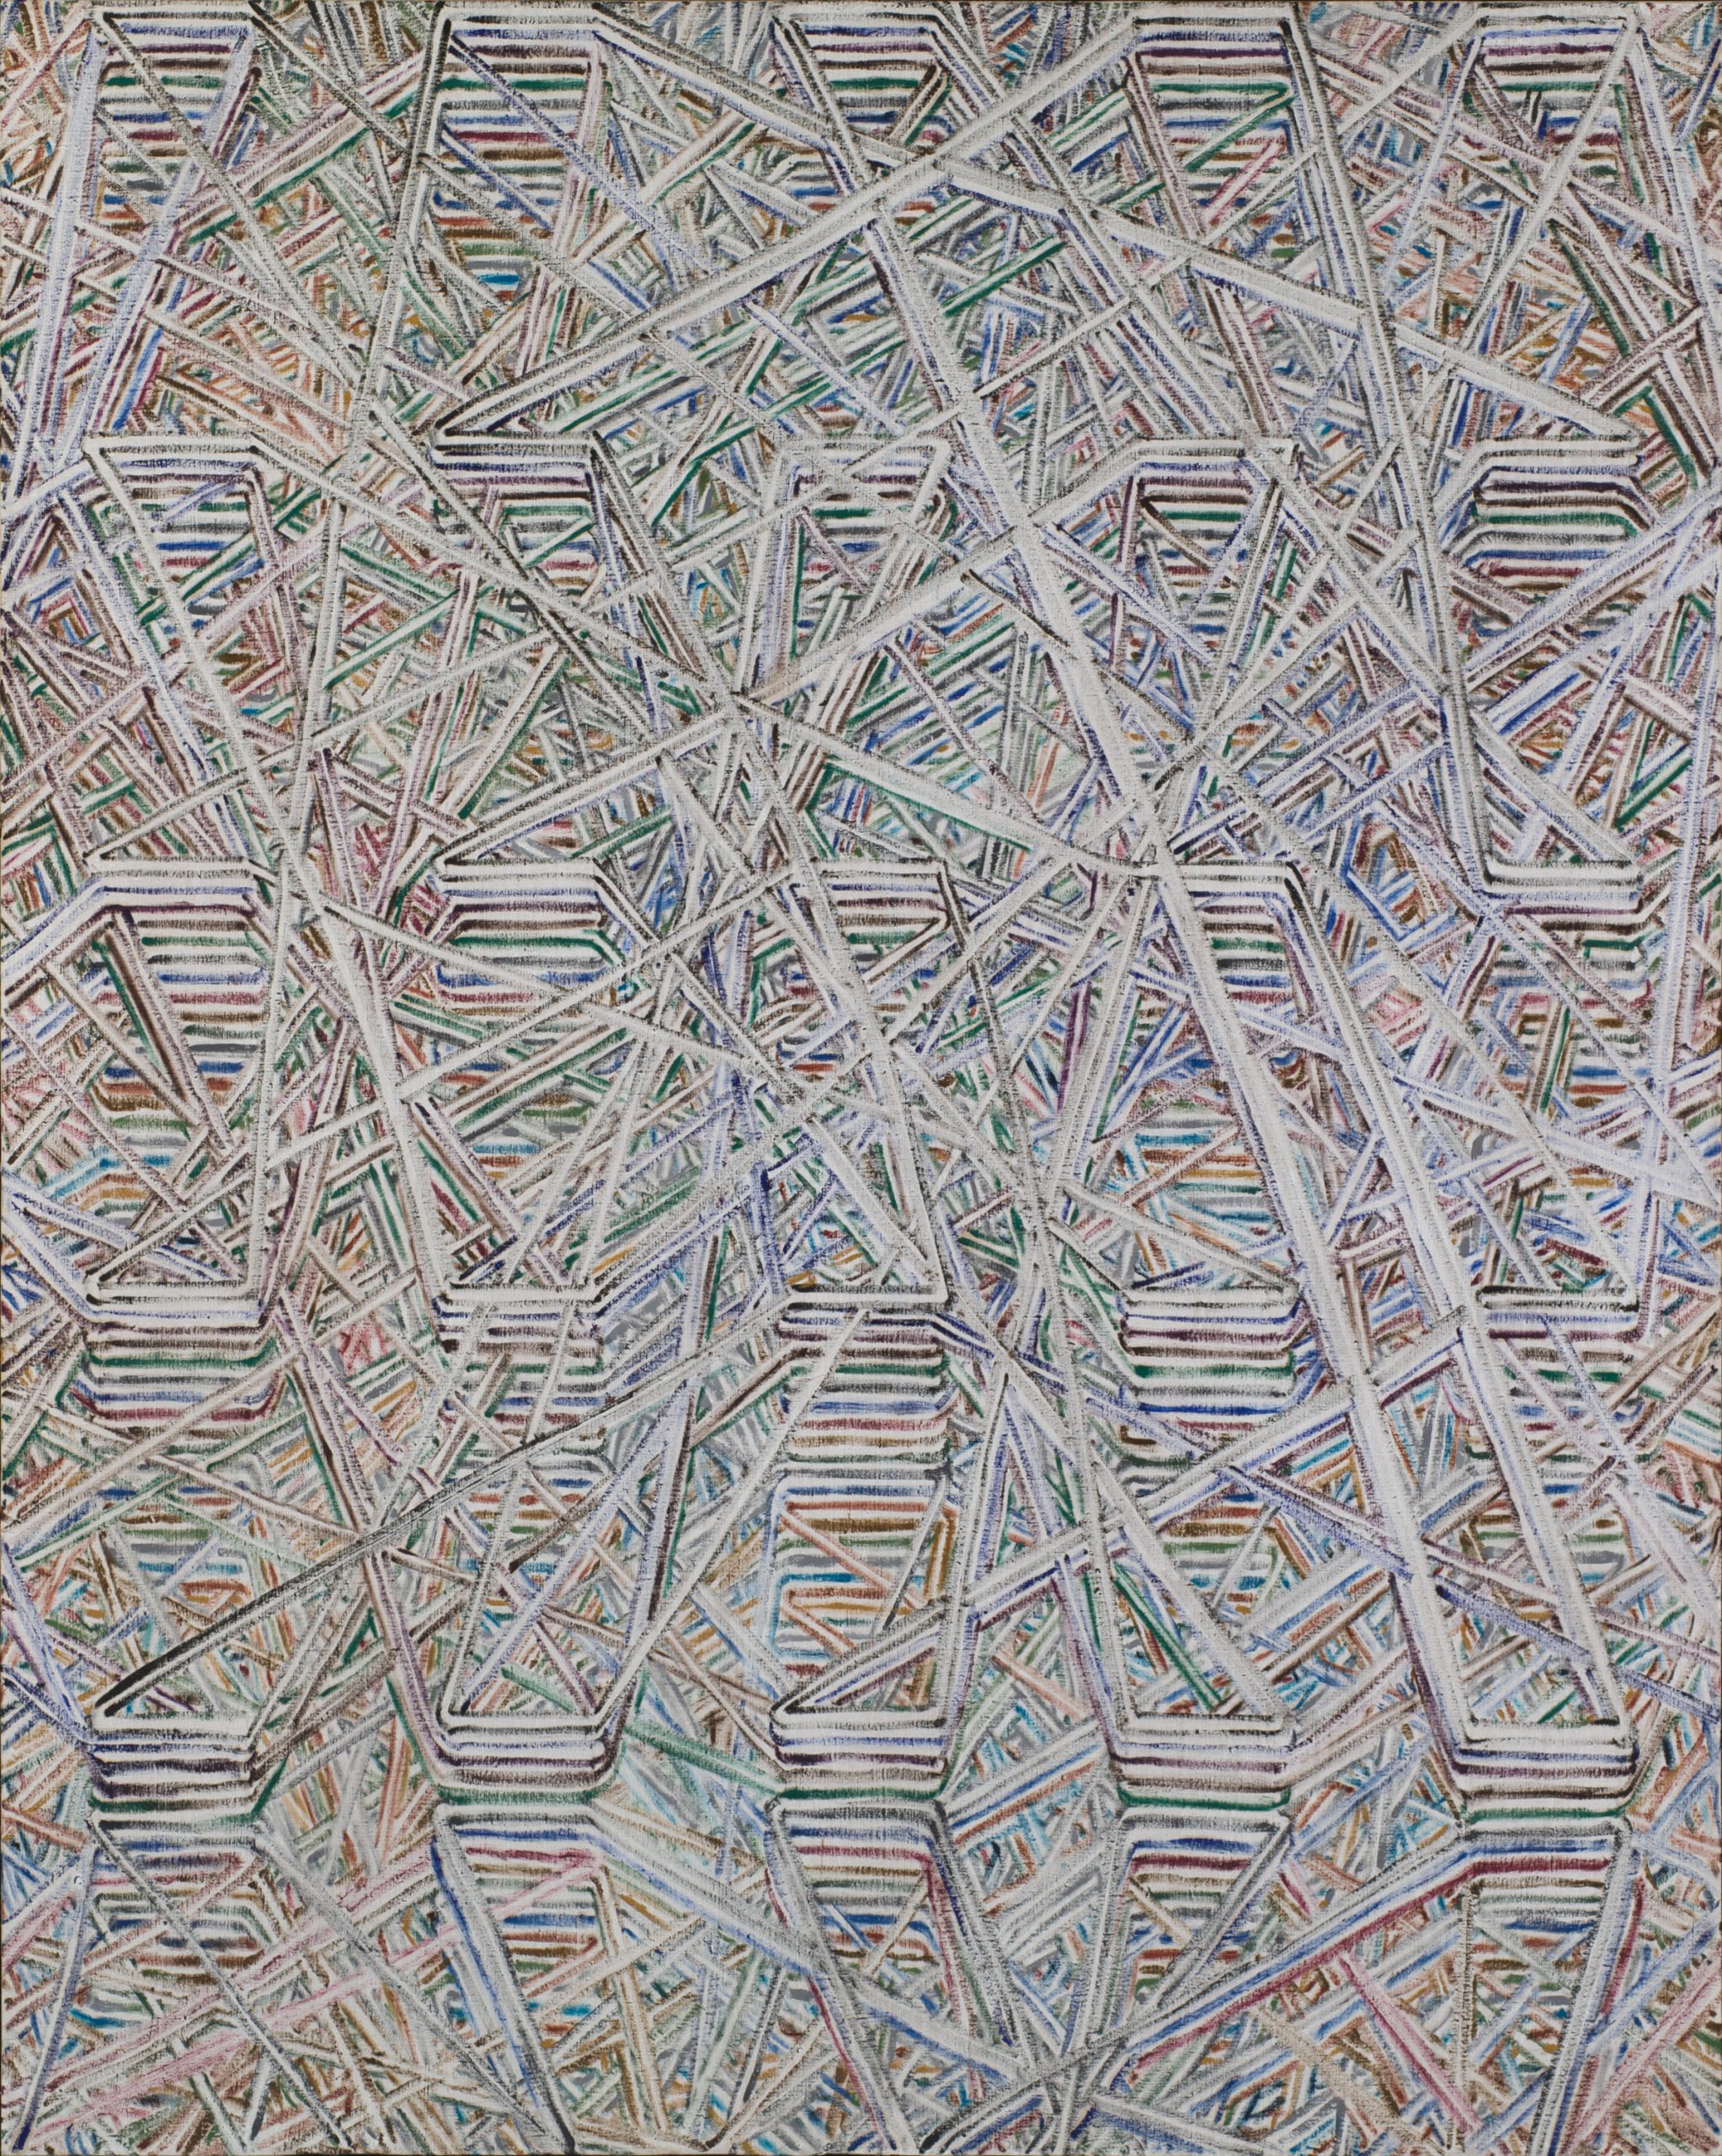 09_弗拉基米爾・可可利亞，《樺樹》，2002，油彩、畫布，175 x 218.2公分。藝術家與臺北市立美術館提供。